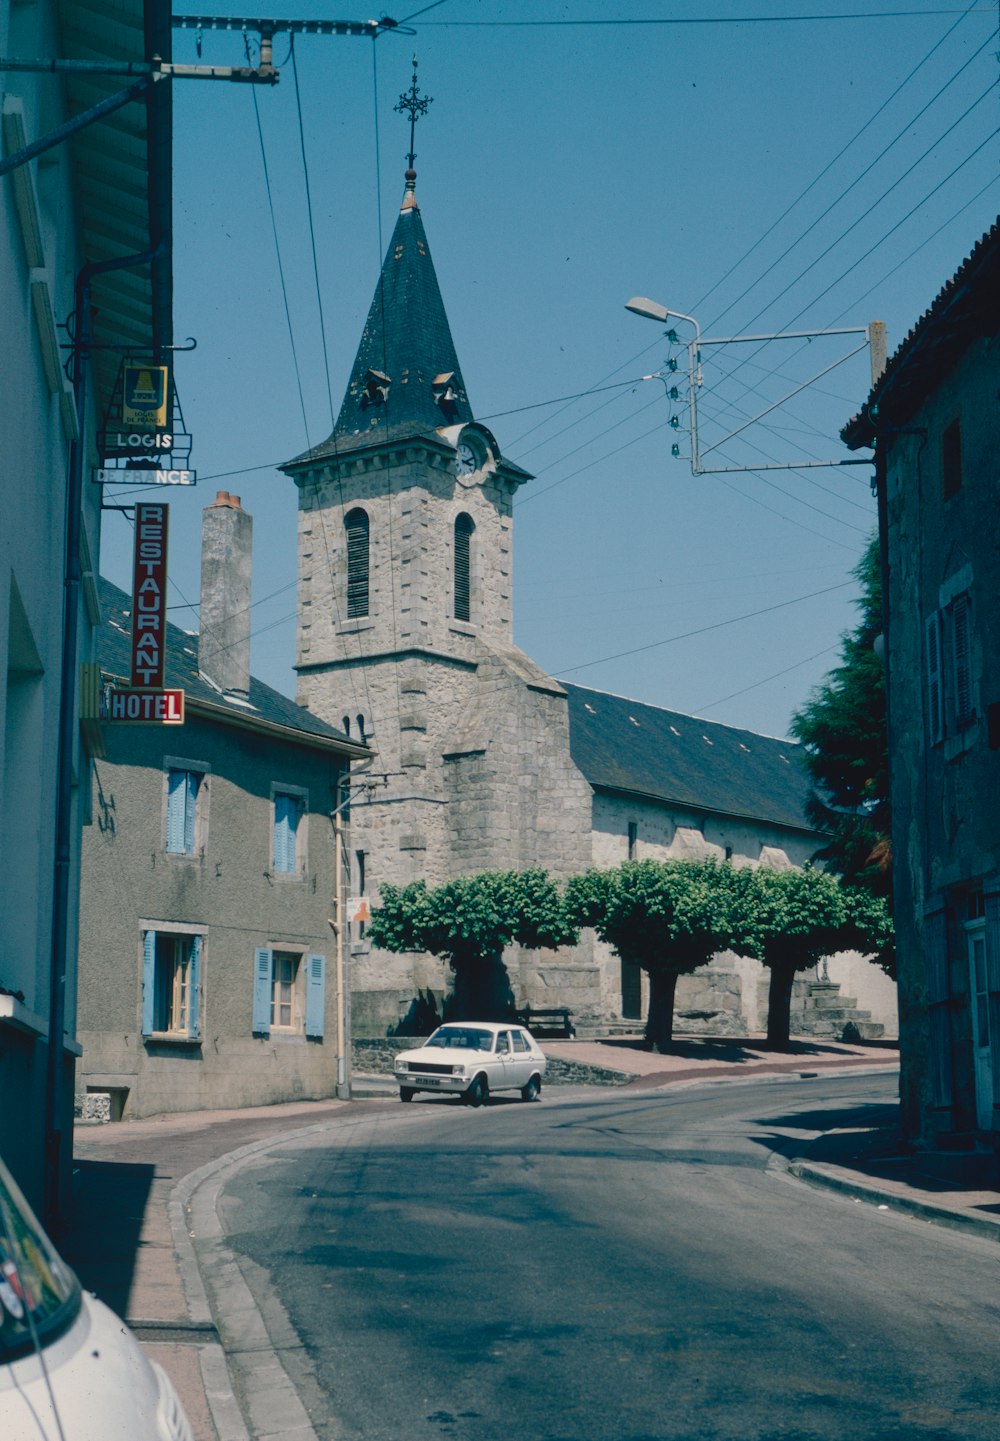 a church on a street